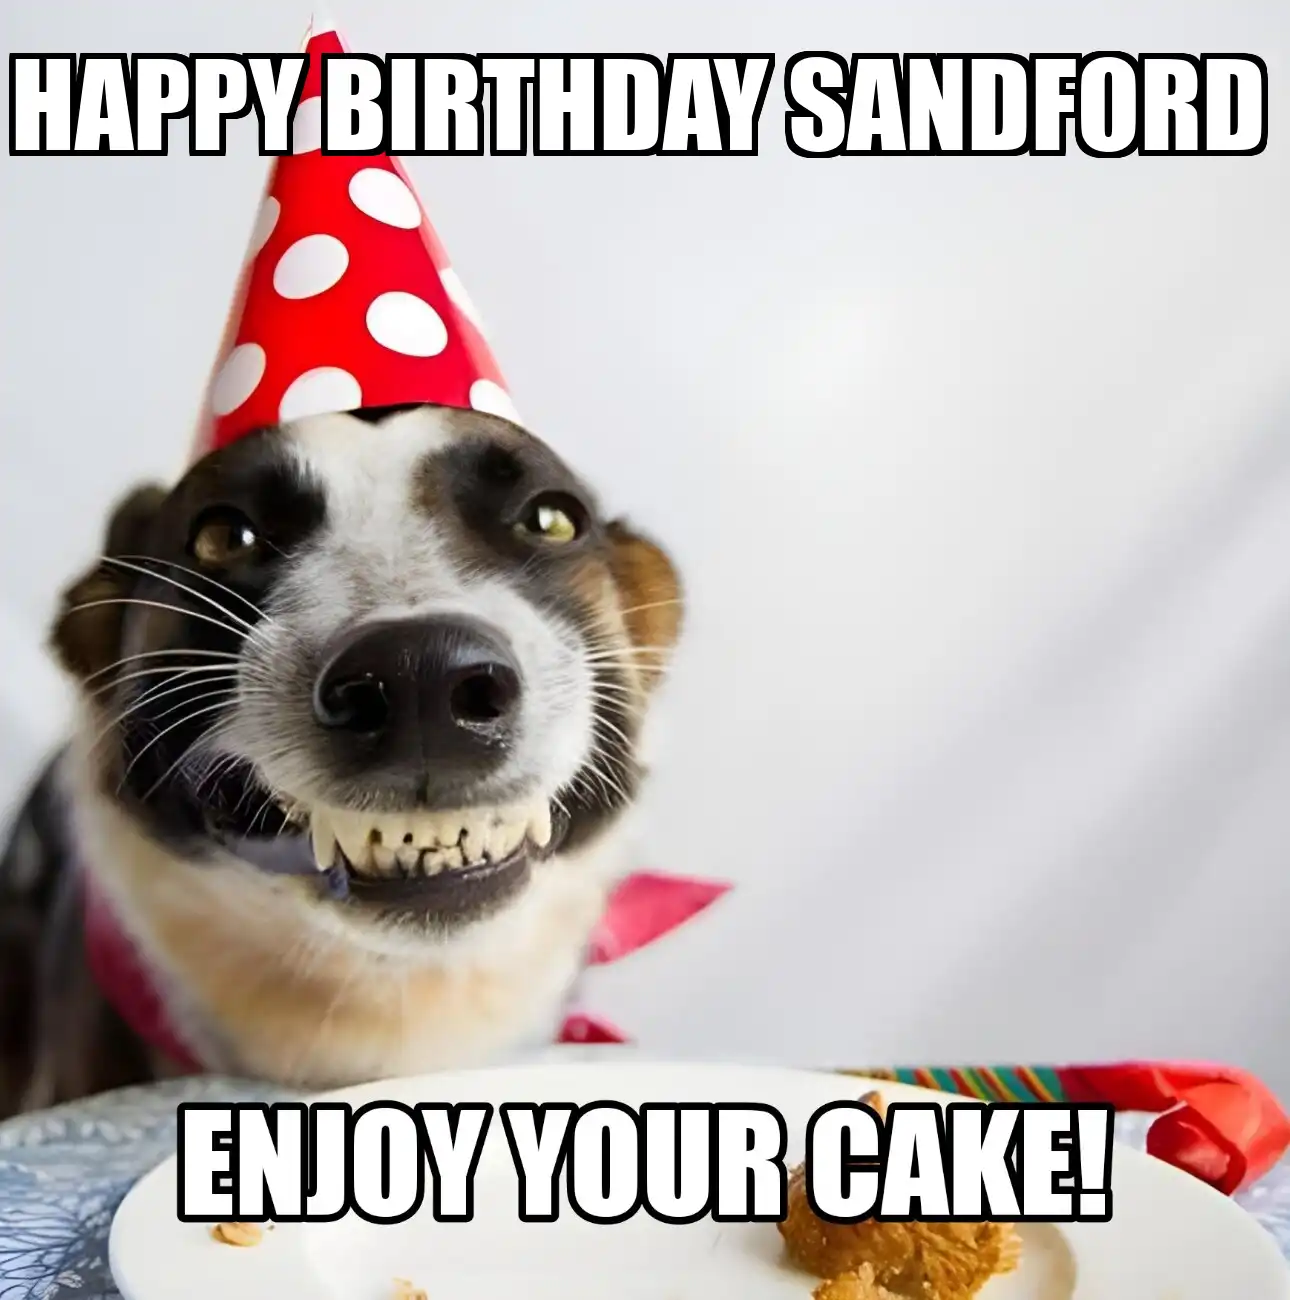 Happy Birthday Sandford Enjoy Your Cake Dog Meme